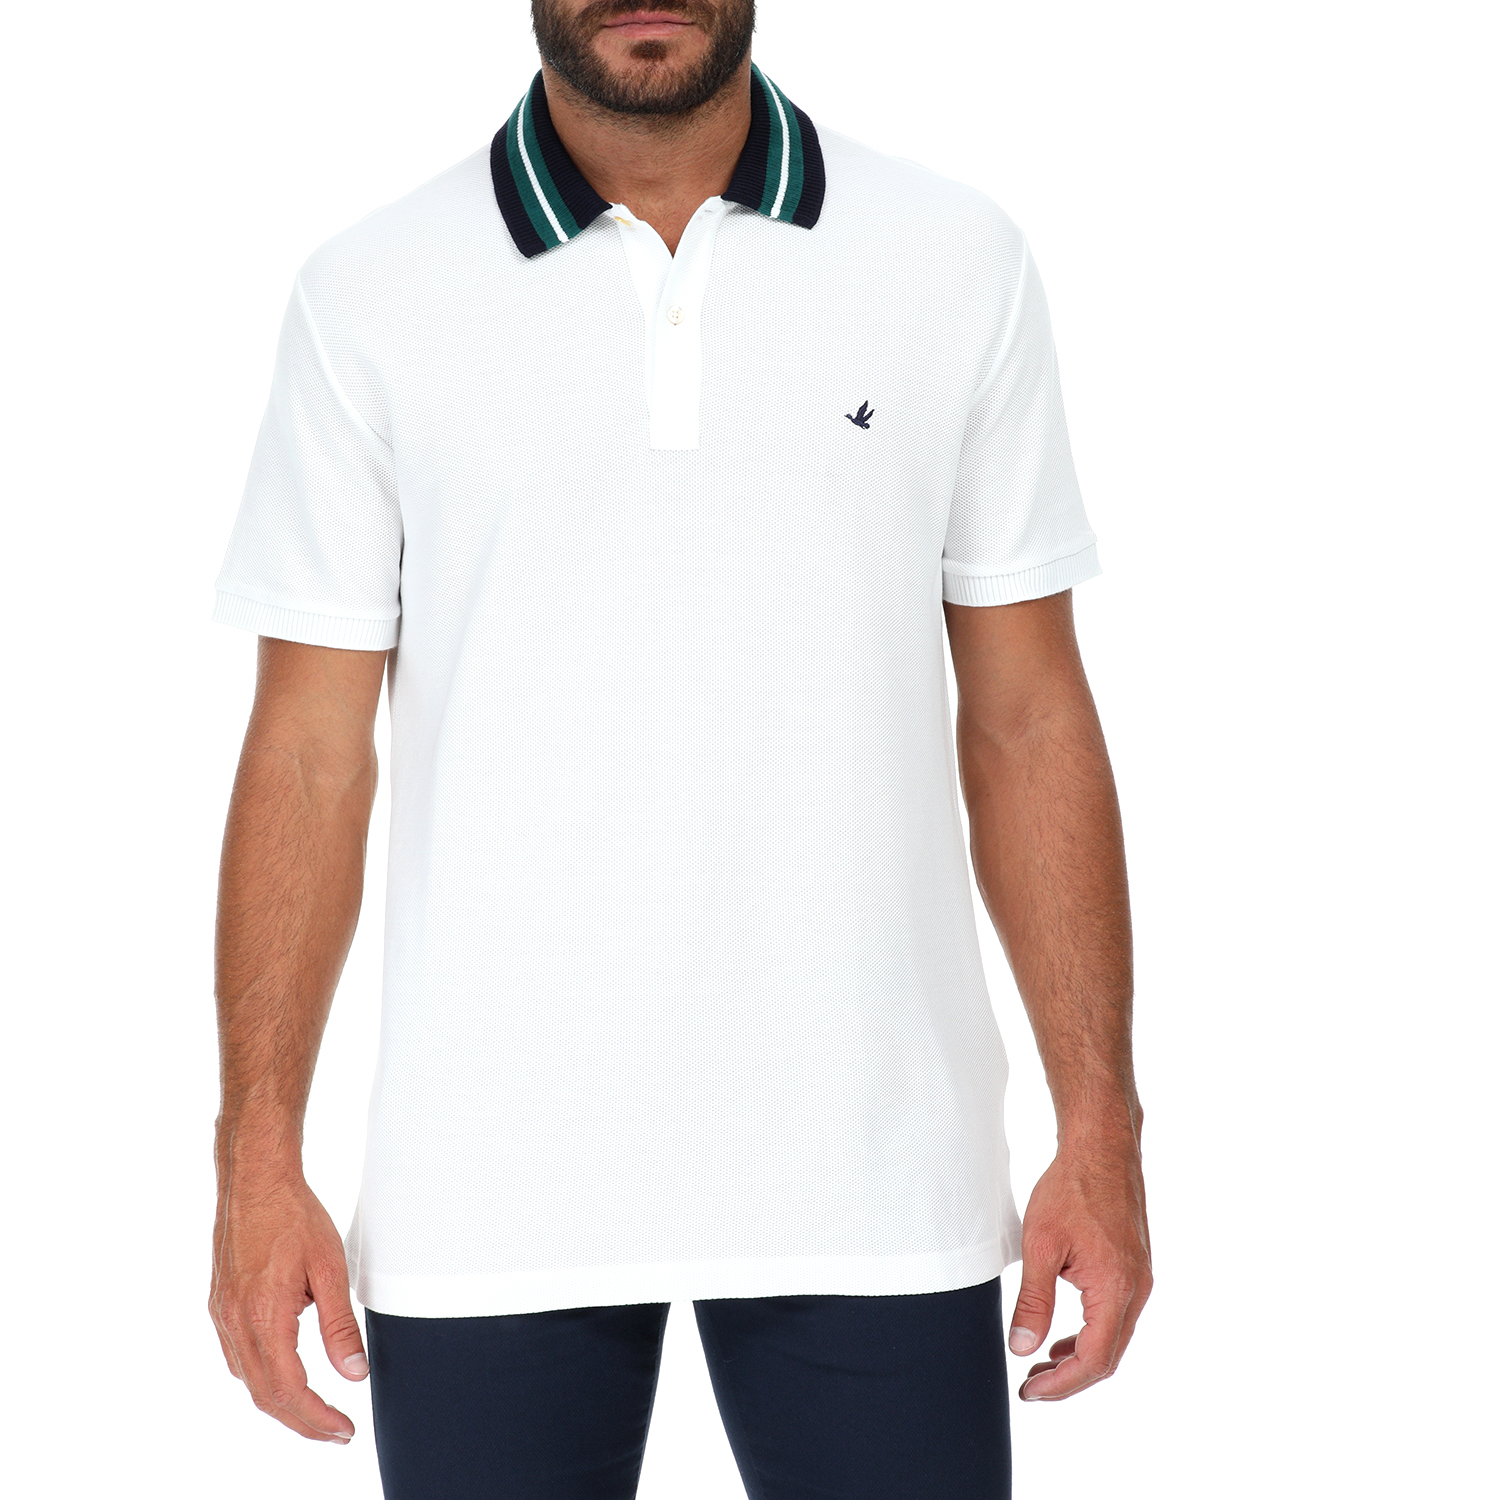 Ανδρικά/Ρούχα/Μπλούζες/Κοντομάνικες BROOKSFIELD - Ανδρική polo μπλούζα BROOKSFIELD λευκή